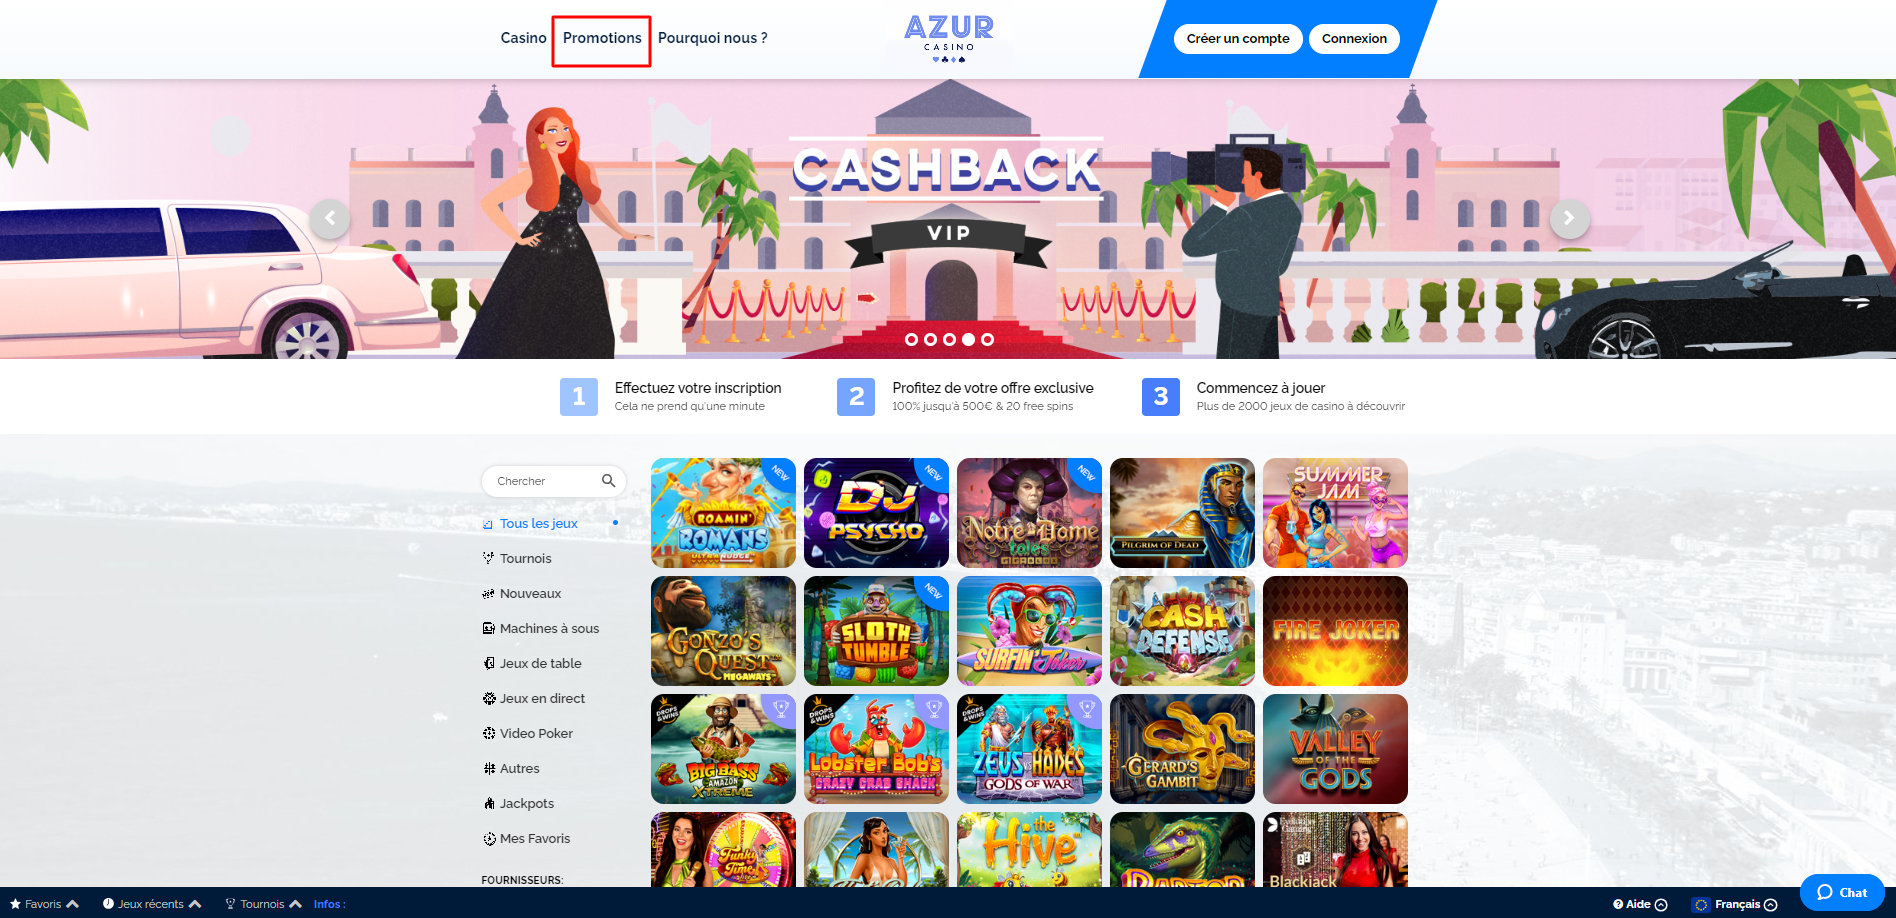 Vous pourrez choisir la promotion d’Azur Casino qui vous convient le plus en cliquant sur l’onglet 